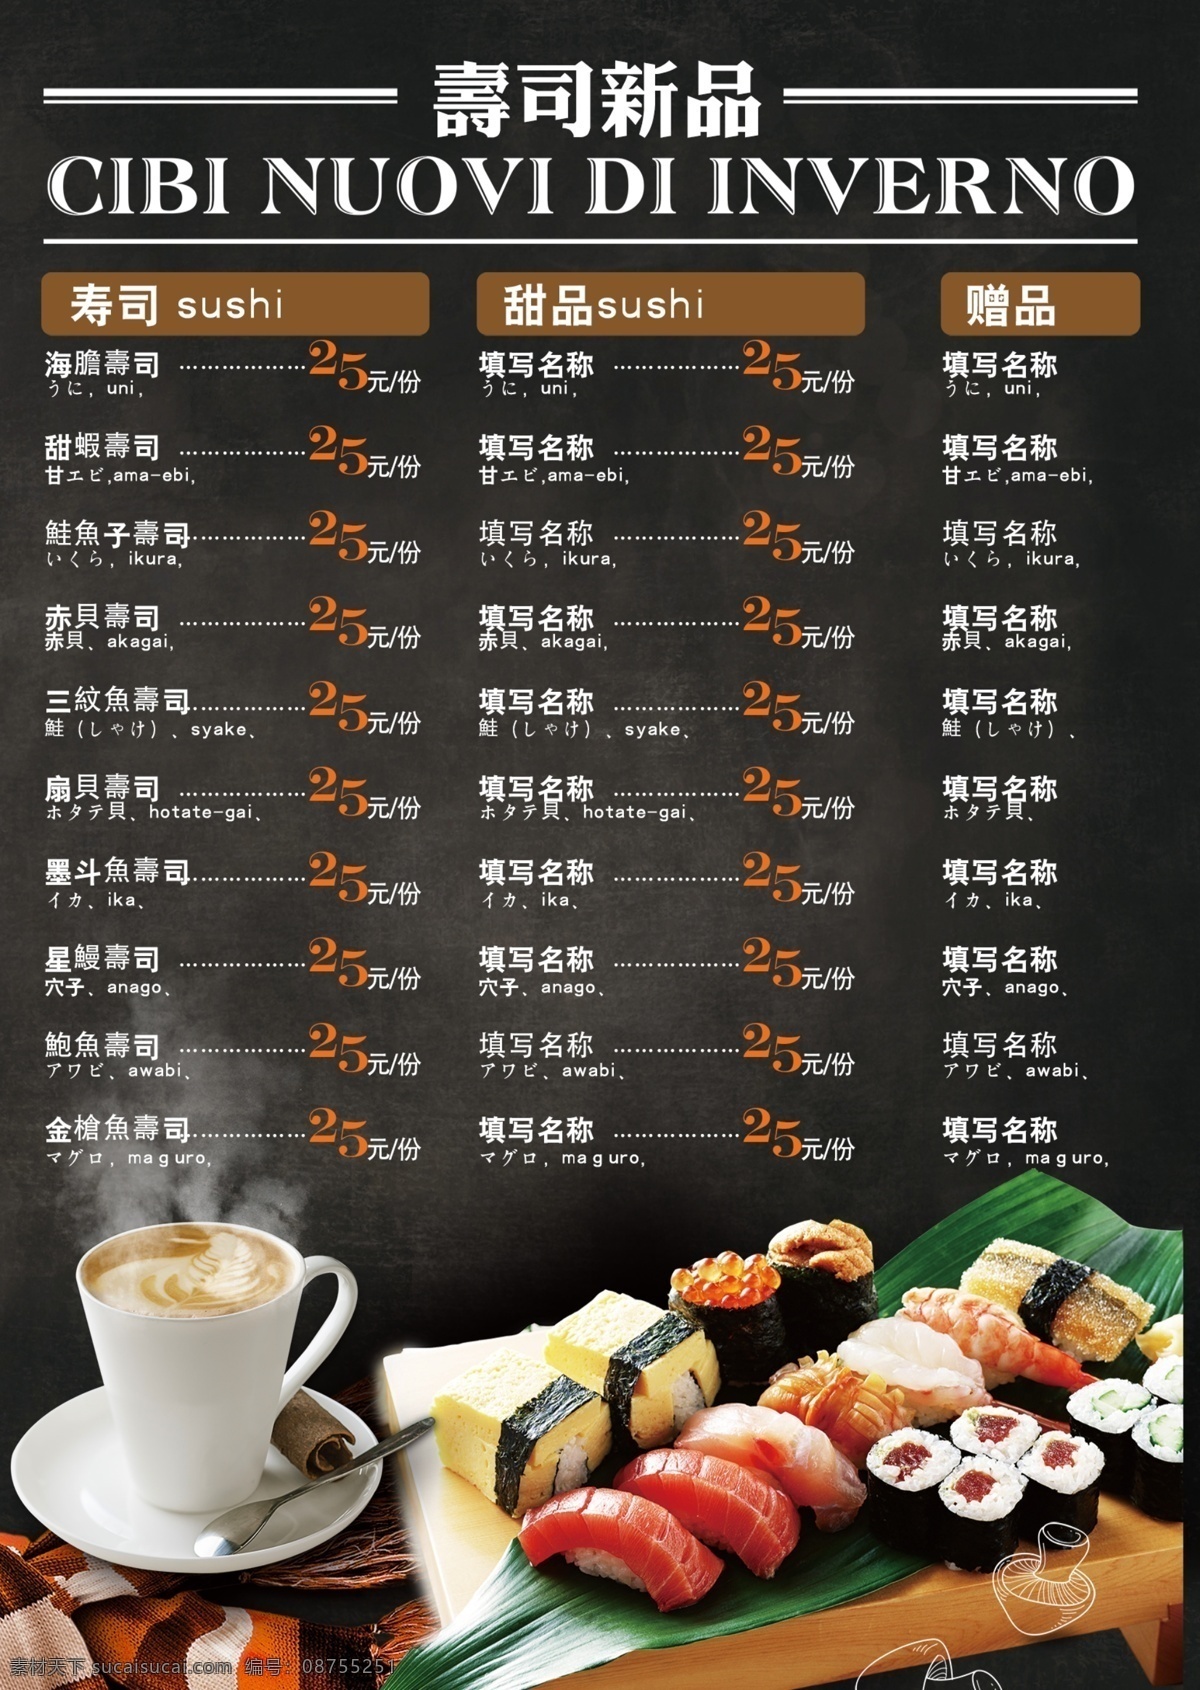 日式料理 寿司 菜单菜谱 价格 价格表 日本 韩式小吃餐厅 三文鱼 刺身 手卷 寿司拼盘 特色卷 日本料理